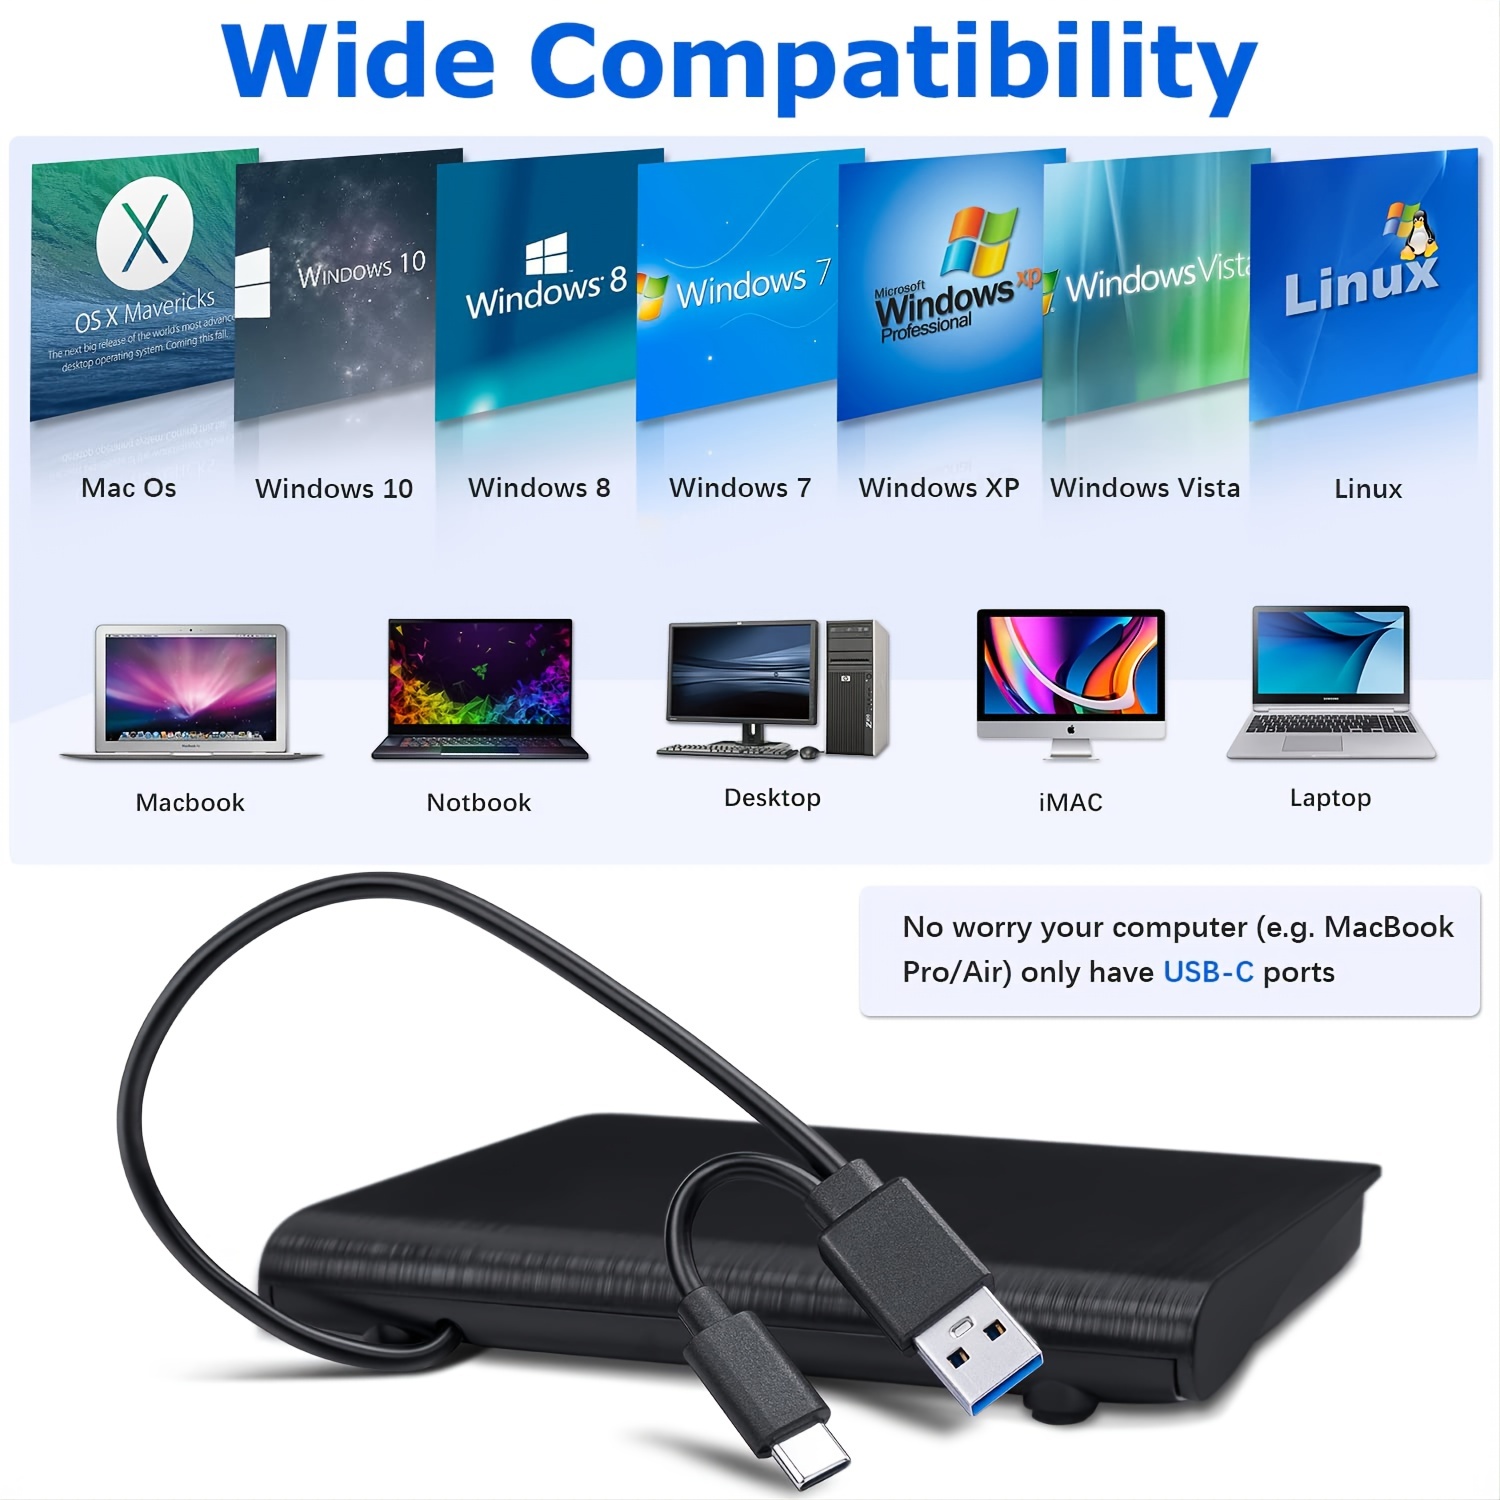 Graveur & Lecteur Dvd & CD Externe Slim USB 3.0/USB Type-C pour